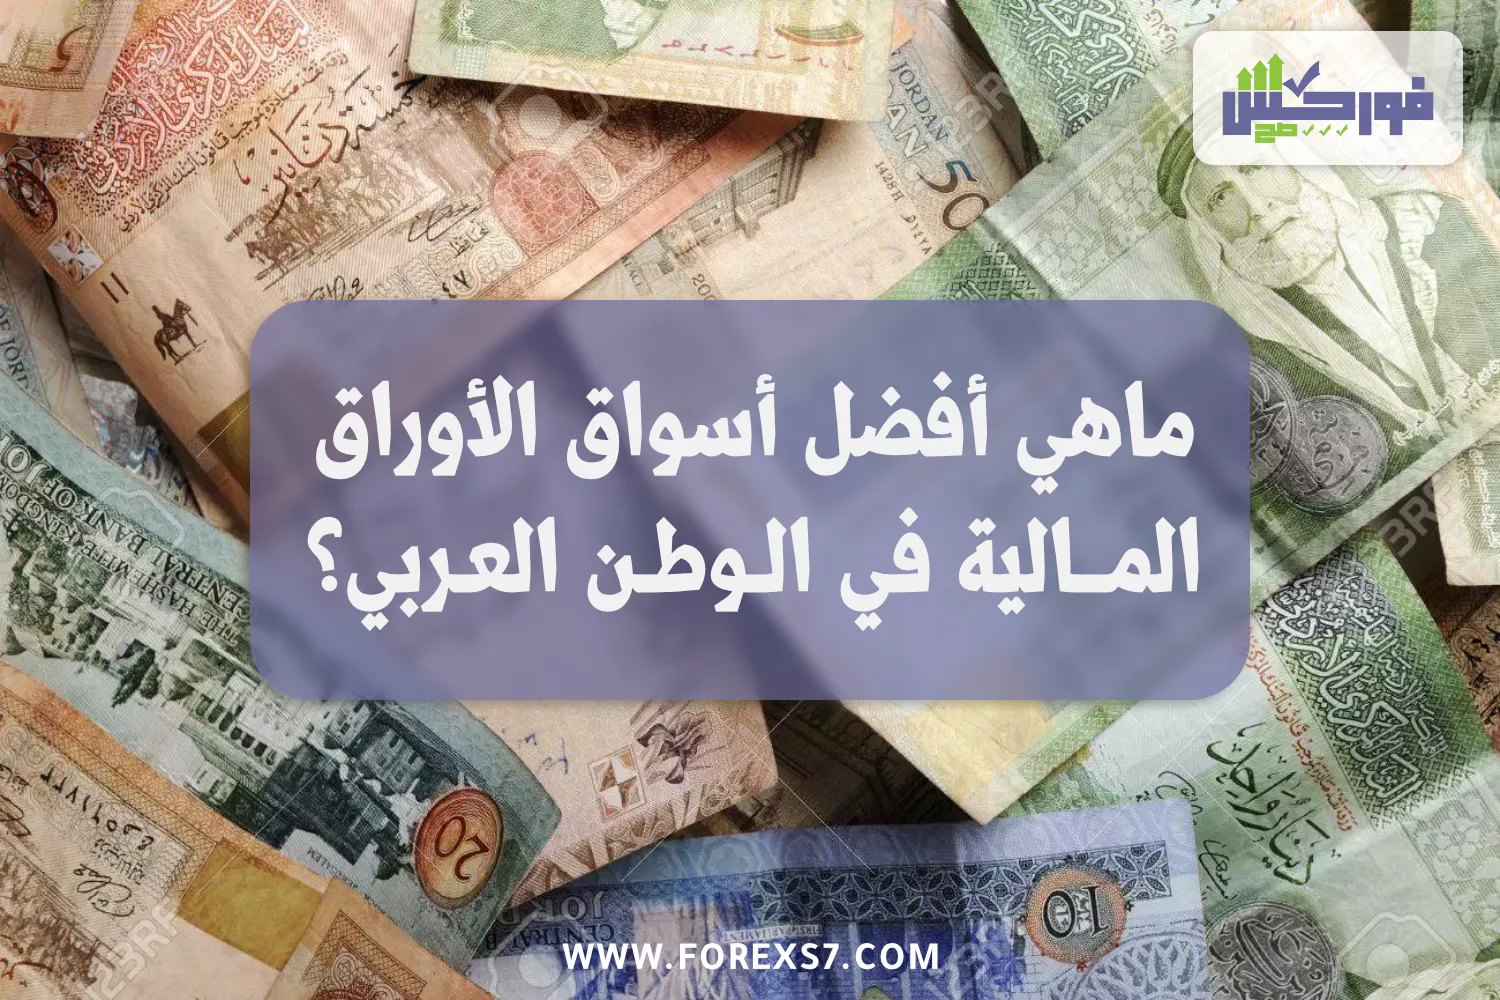 ما هي أفضل أسواق الأوراق المالية في الوطن العربي ؟